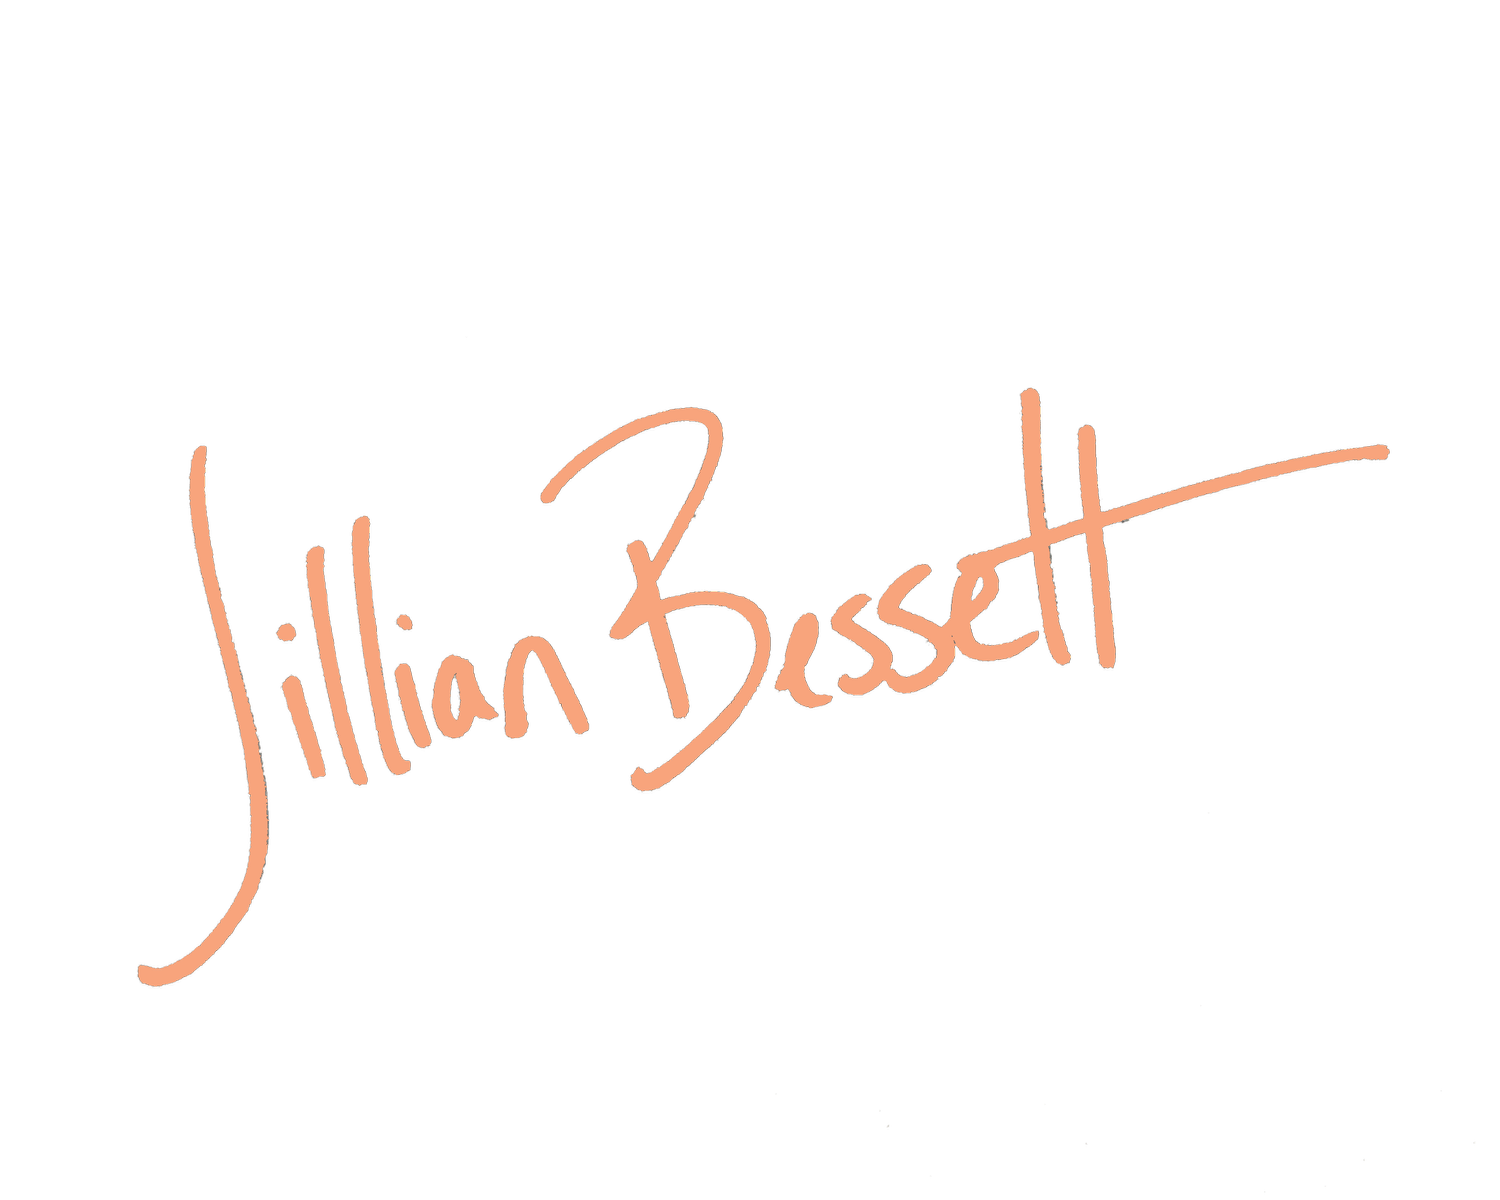 Jillian Bessett